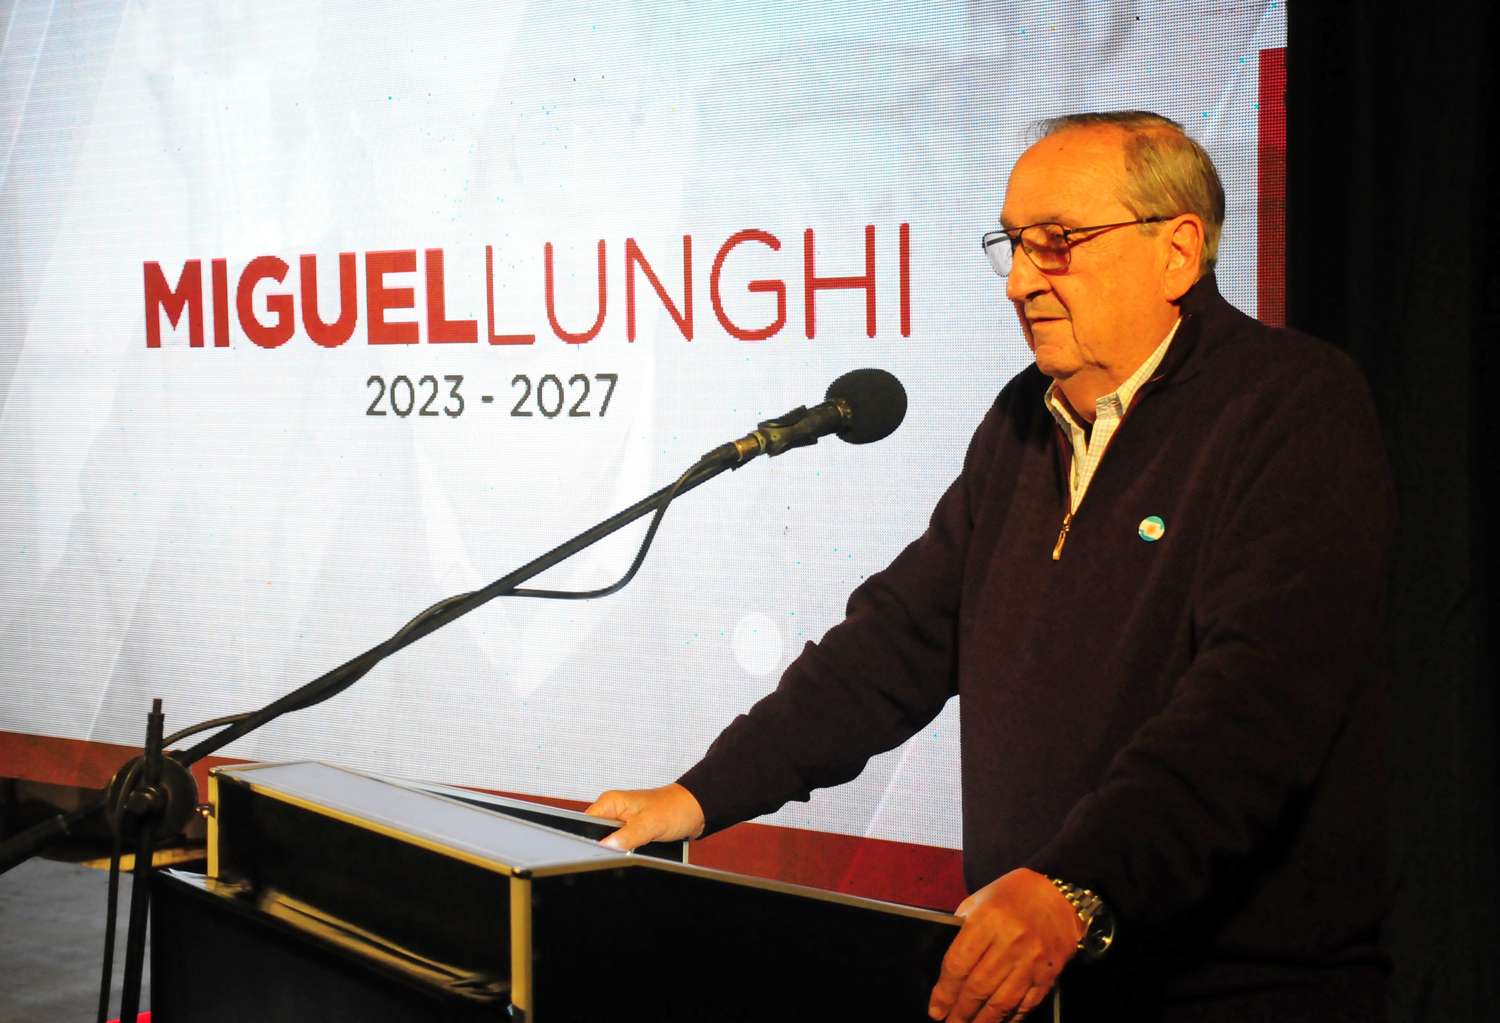 Lunghi ya es precandidato y va por su sexto mandato